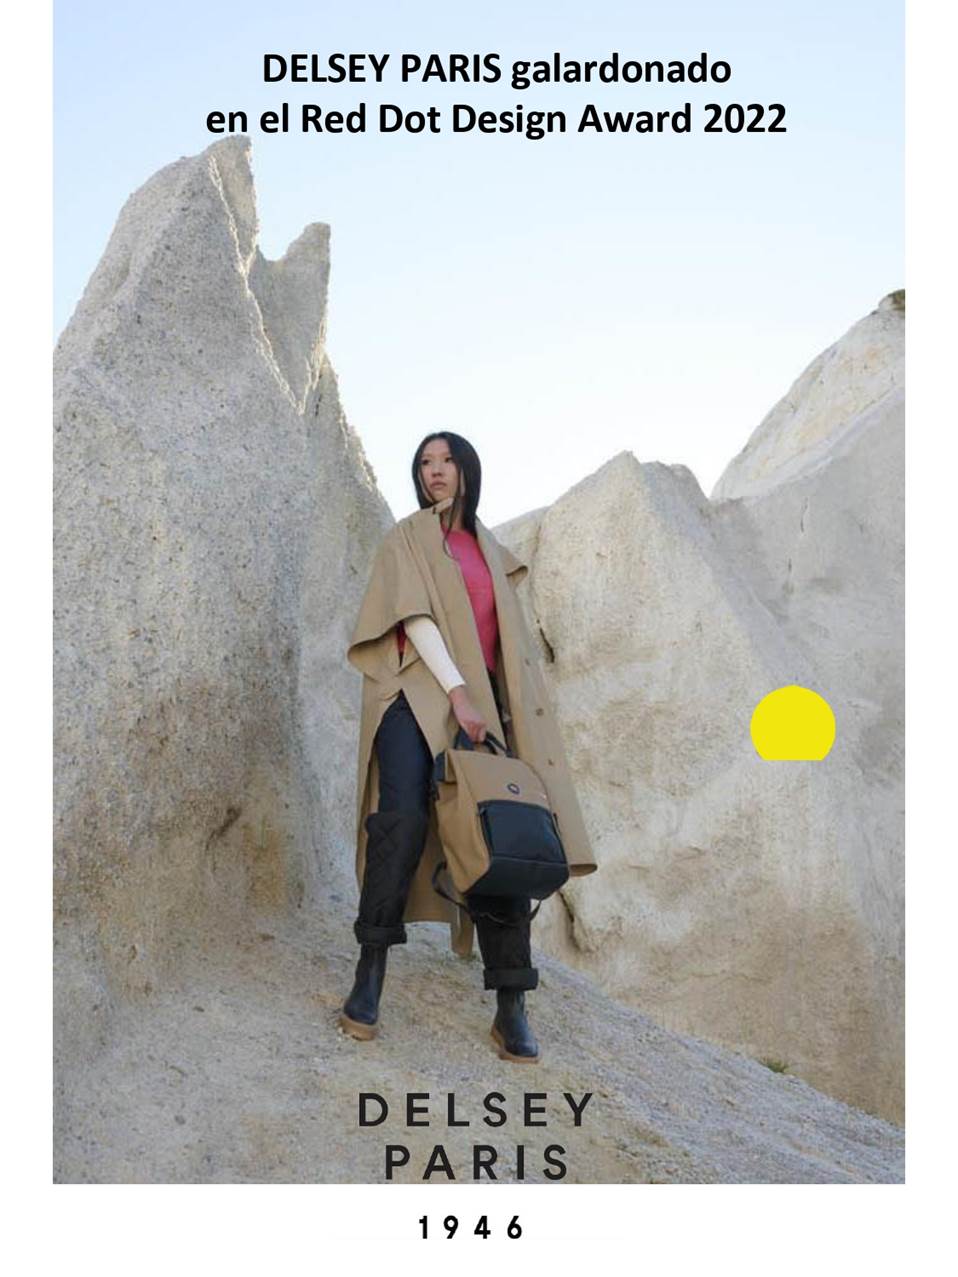 DELSEY PARIS galardonado en el Red Dot Design Award 2022